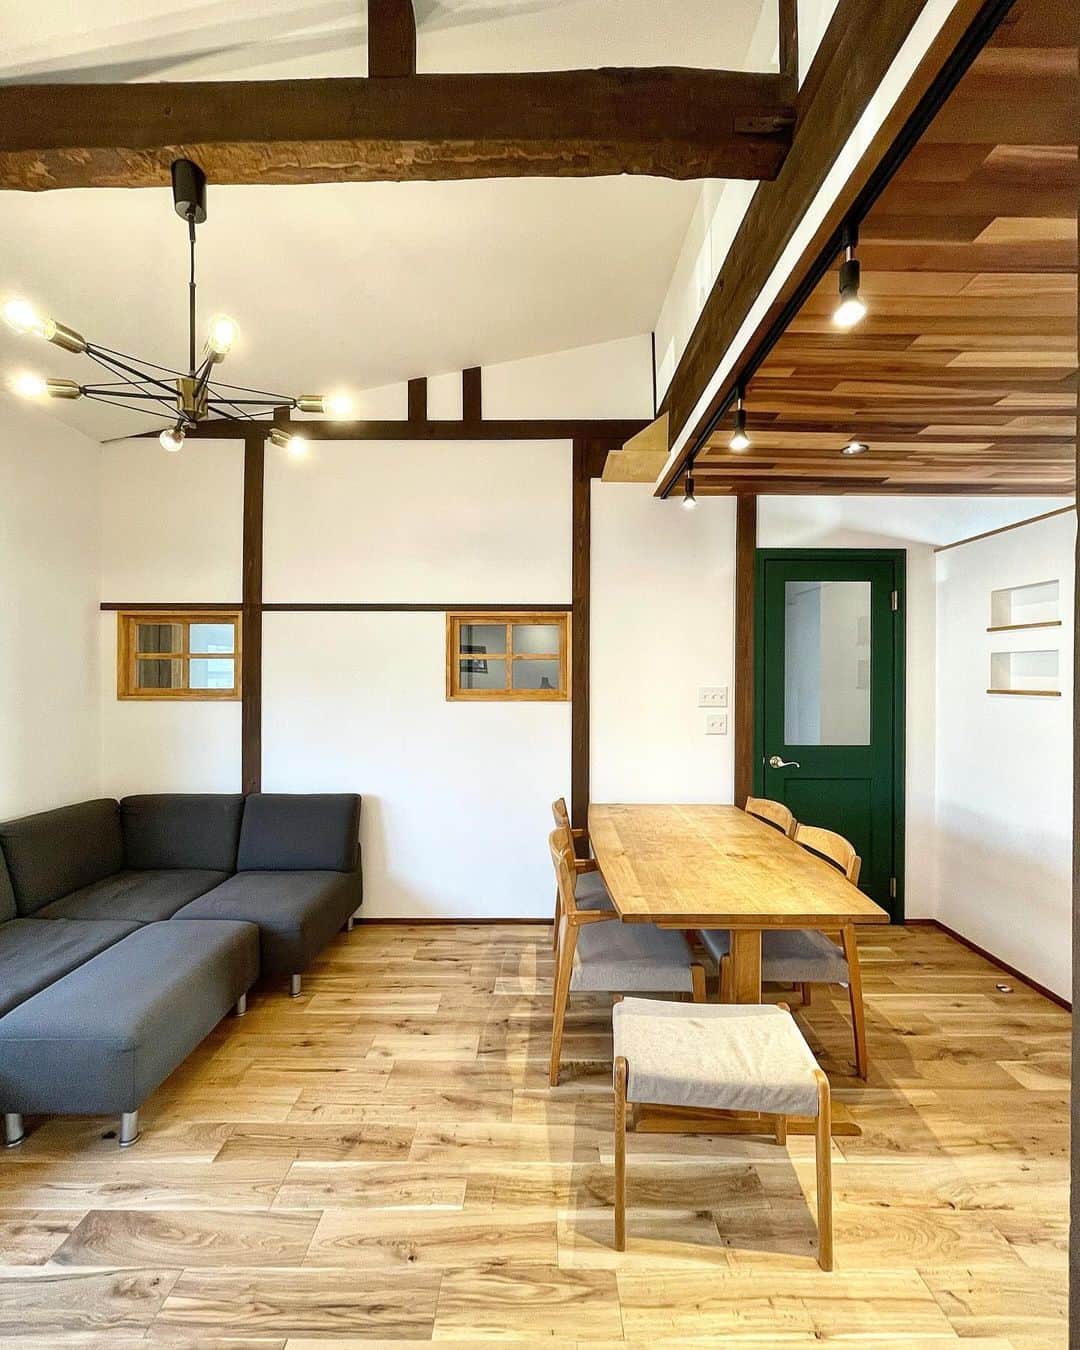 fukui-kensetsuのインスタグラム：「山形市椚沢K様邸のLDKです。  大規模リフォーム工事で、元々も綺麗なお部屋でしたが、元の良さも残しつつ、当社らしい自然素材のテイストを追加して雰囲気が様変わりしました✨  #リフォーム工事 #リフォーム事例 #大規模リフォーム #リノベーション #リノベーション住宅 #リノベーション工事 #オーク無垢フローリング #レッドシダーの天井 #室内窓 #輸入ドア #自然塗料 #自然塗料リボス #自然素材の家 #自然素材の家づくり #マイホーム  +++--------------------+++  山形暮らしの家づくり  #福井建設#山形市#工務店#注文住宅#山形注文住宅#山形の工務店#山形住宅会社  山形の風土に合った注文住宅を建設しています。  ↓プロフィール↓ @fukui_kensetsu  ↓現場のことや日常をご紹介するアカウント↓ @fukui_kensetsu_pr  お問い合わせなど、お気軽にDMしてください♪ +++--------------------+++」